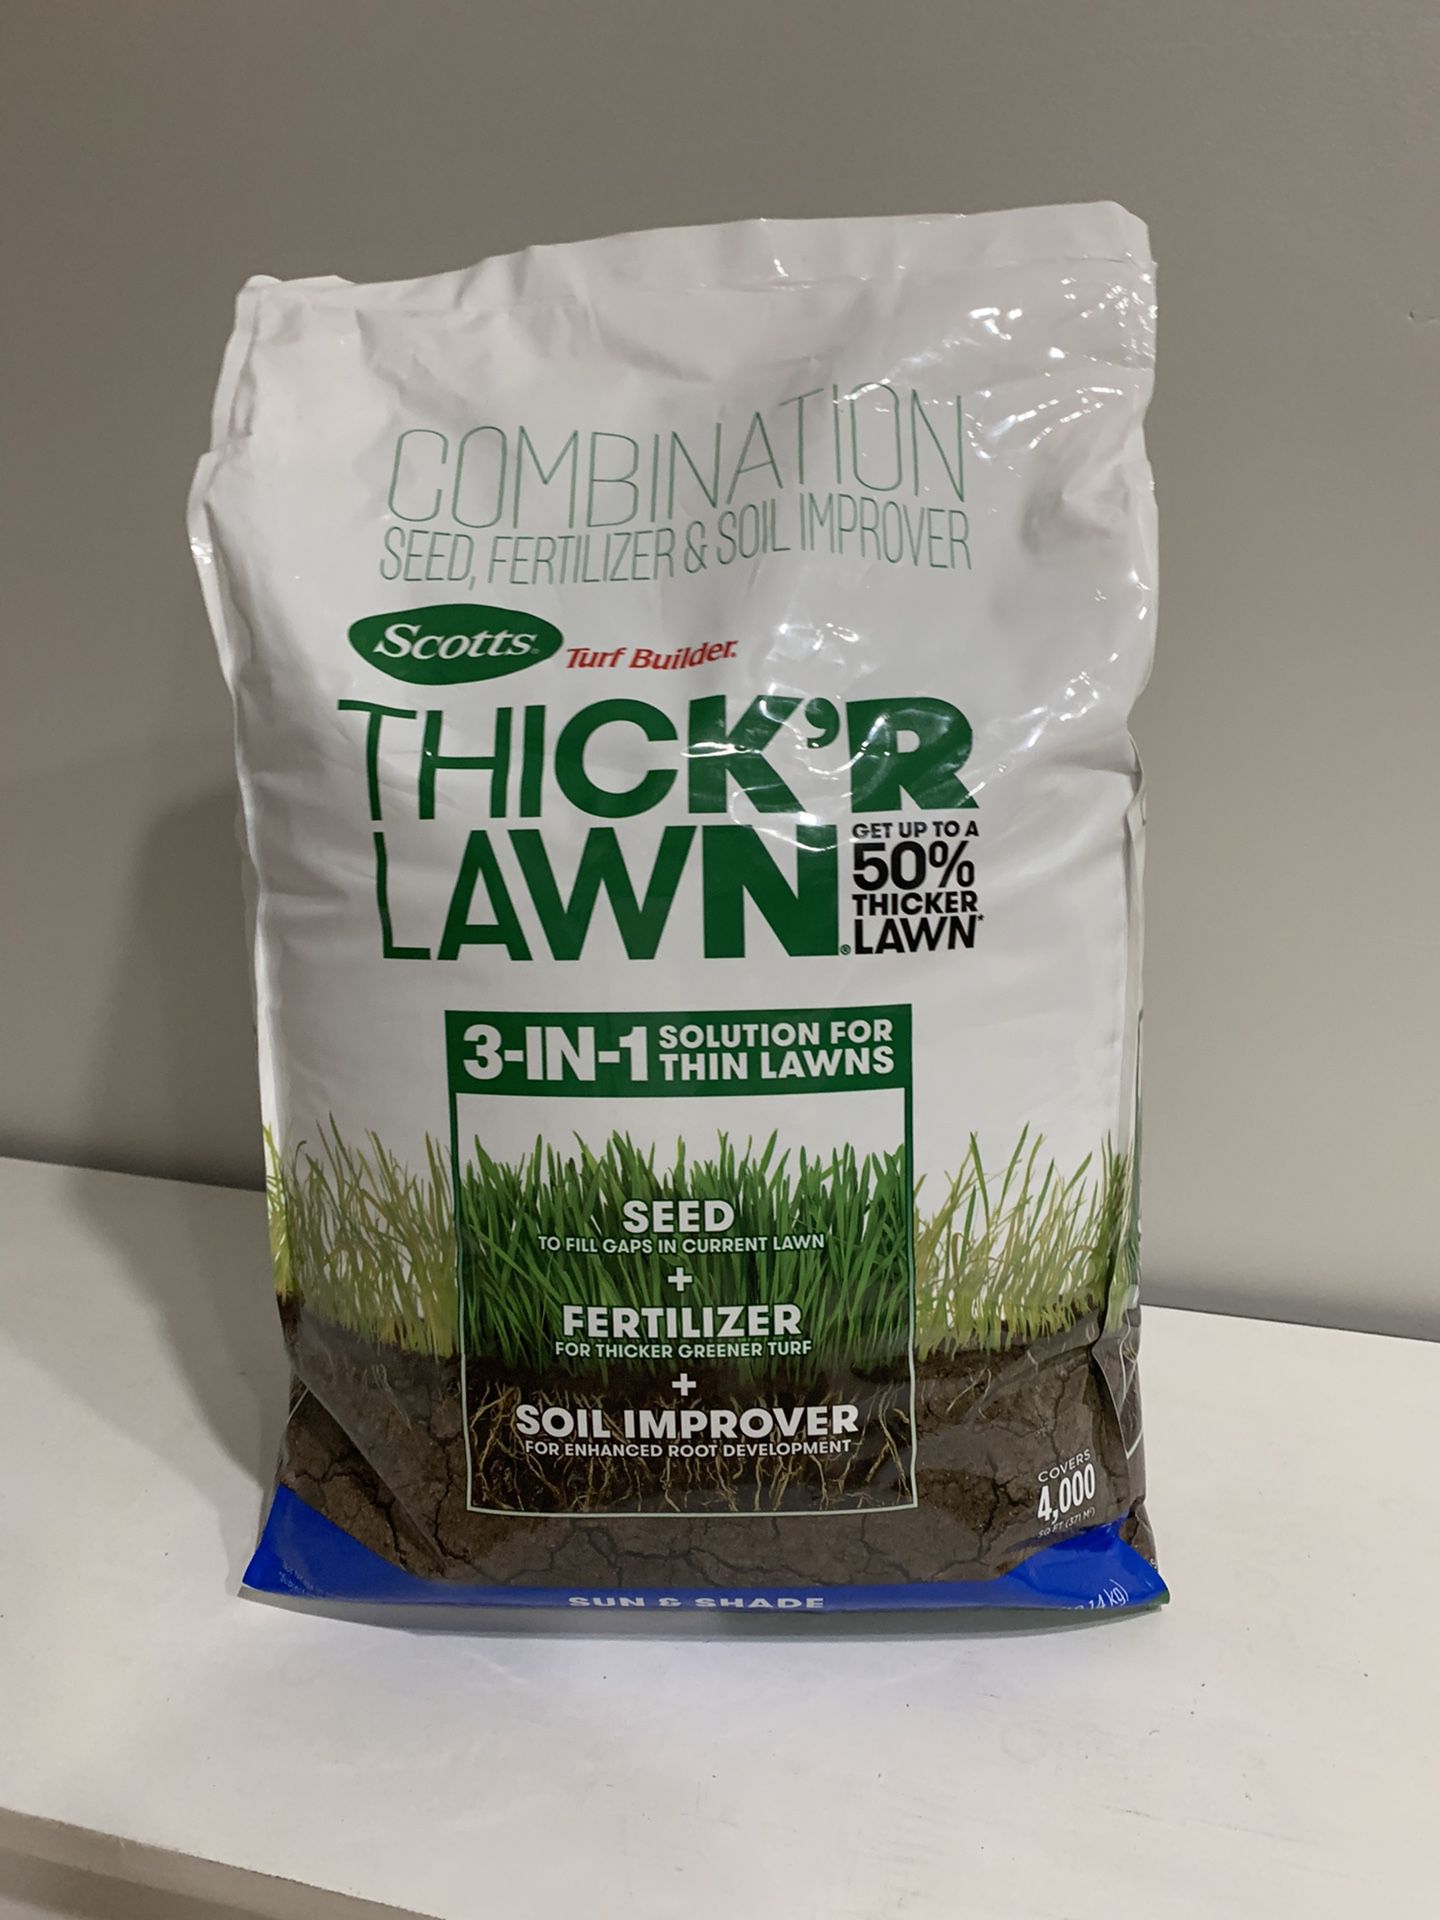 Seed, fertilizer & soil improver